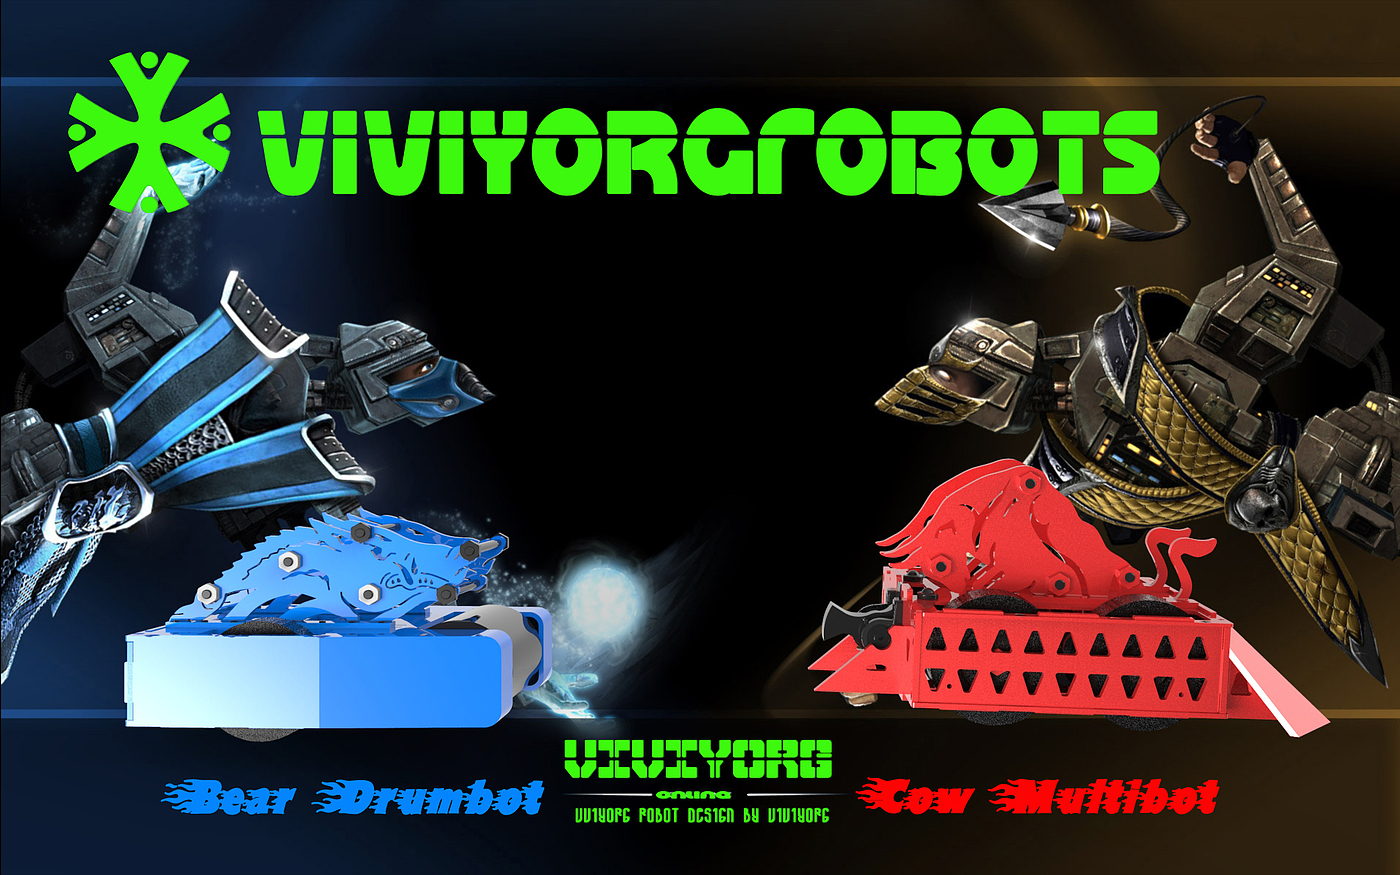 格斗机器人，对战机器人，AGV赛车，Robot Wars，RoboMasters，BattleBots，RobotGames，